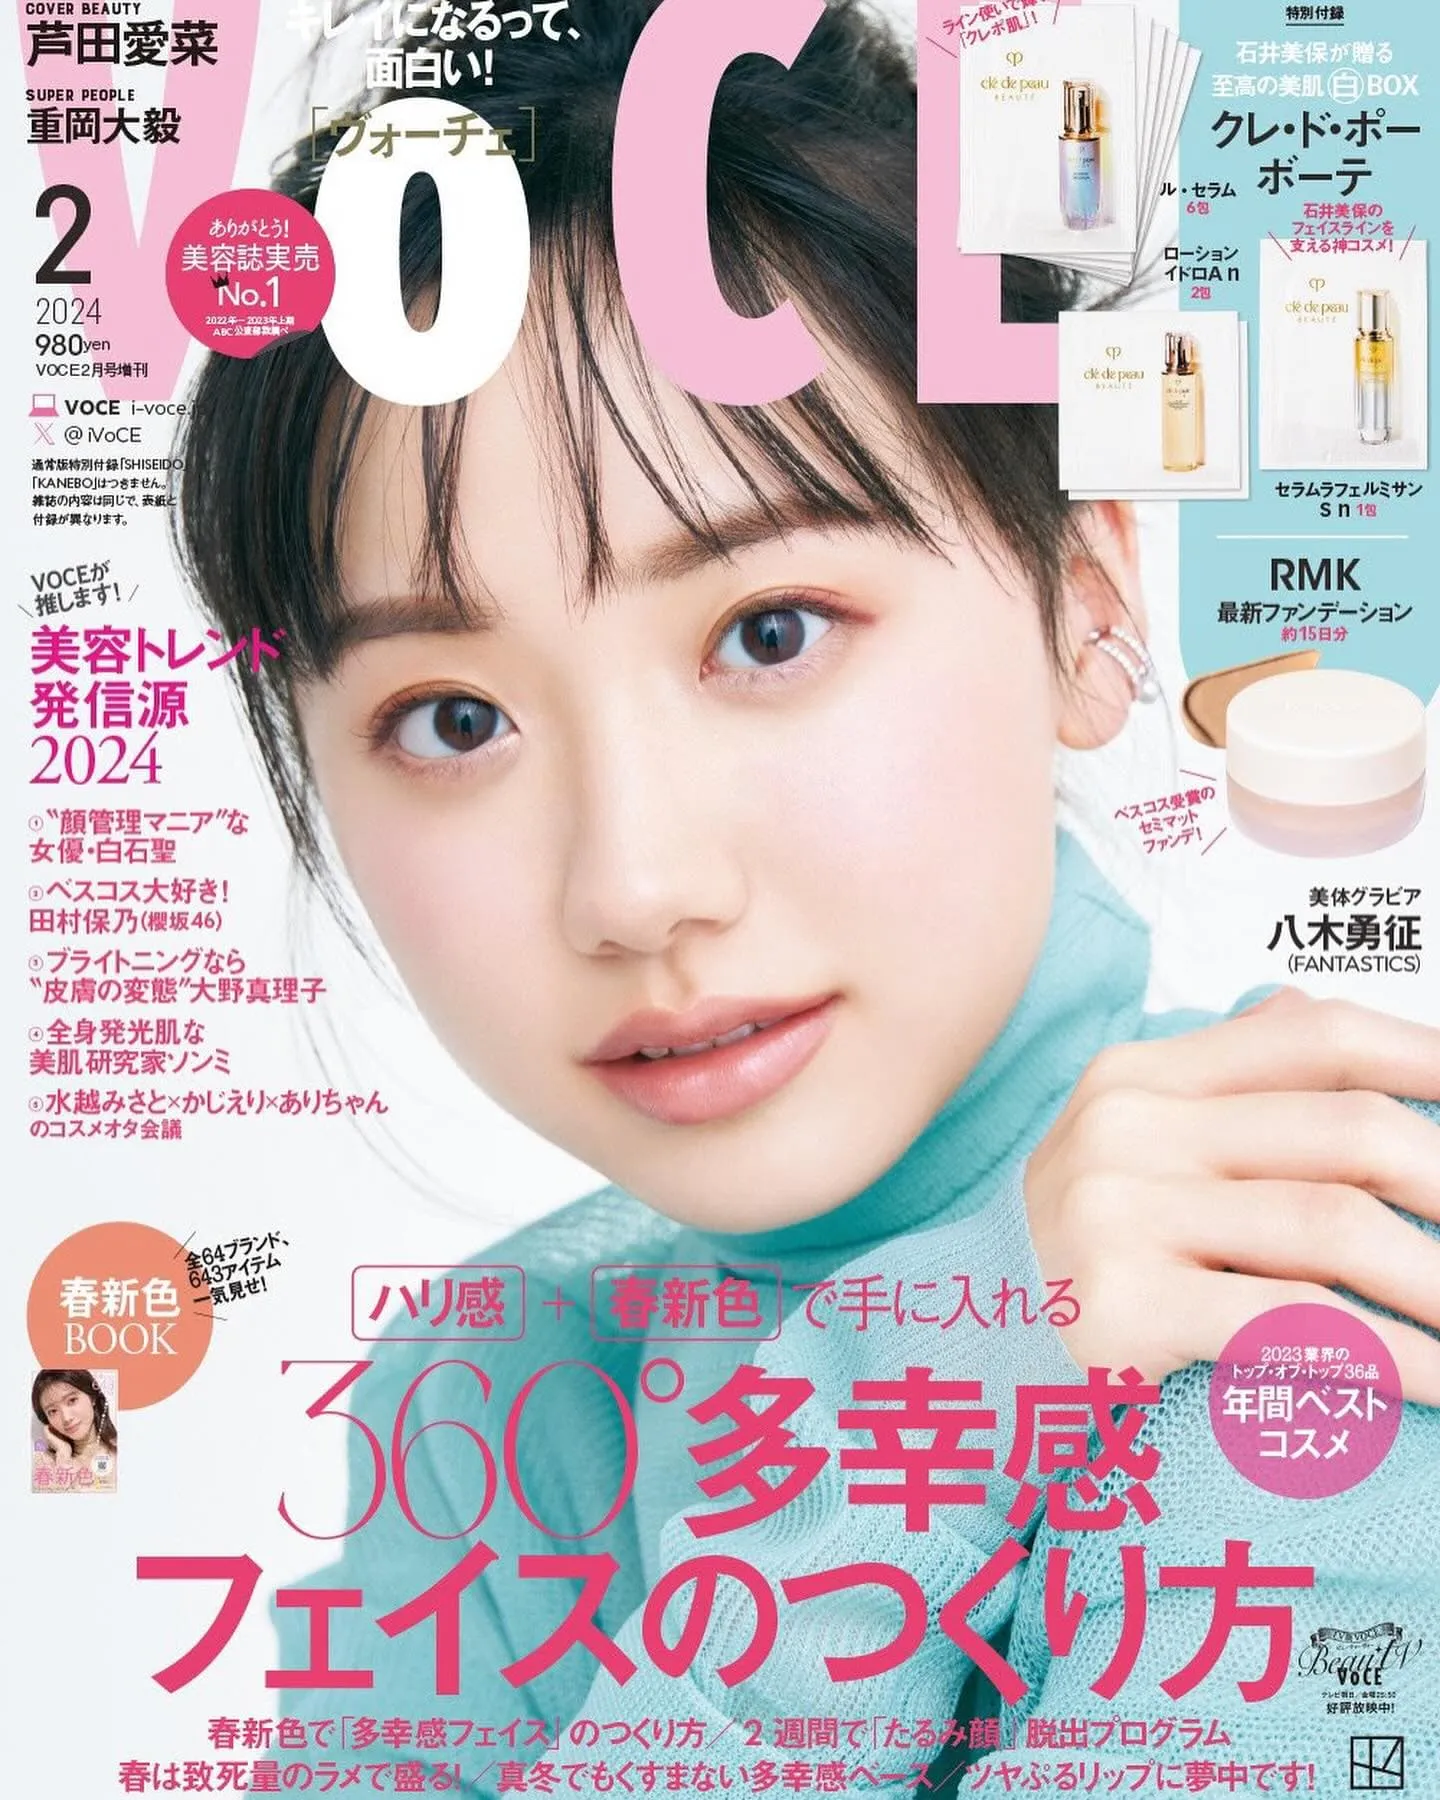 蘆田愛菜登美妝雜誌「VOCE」封面